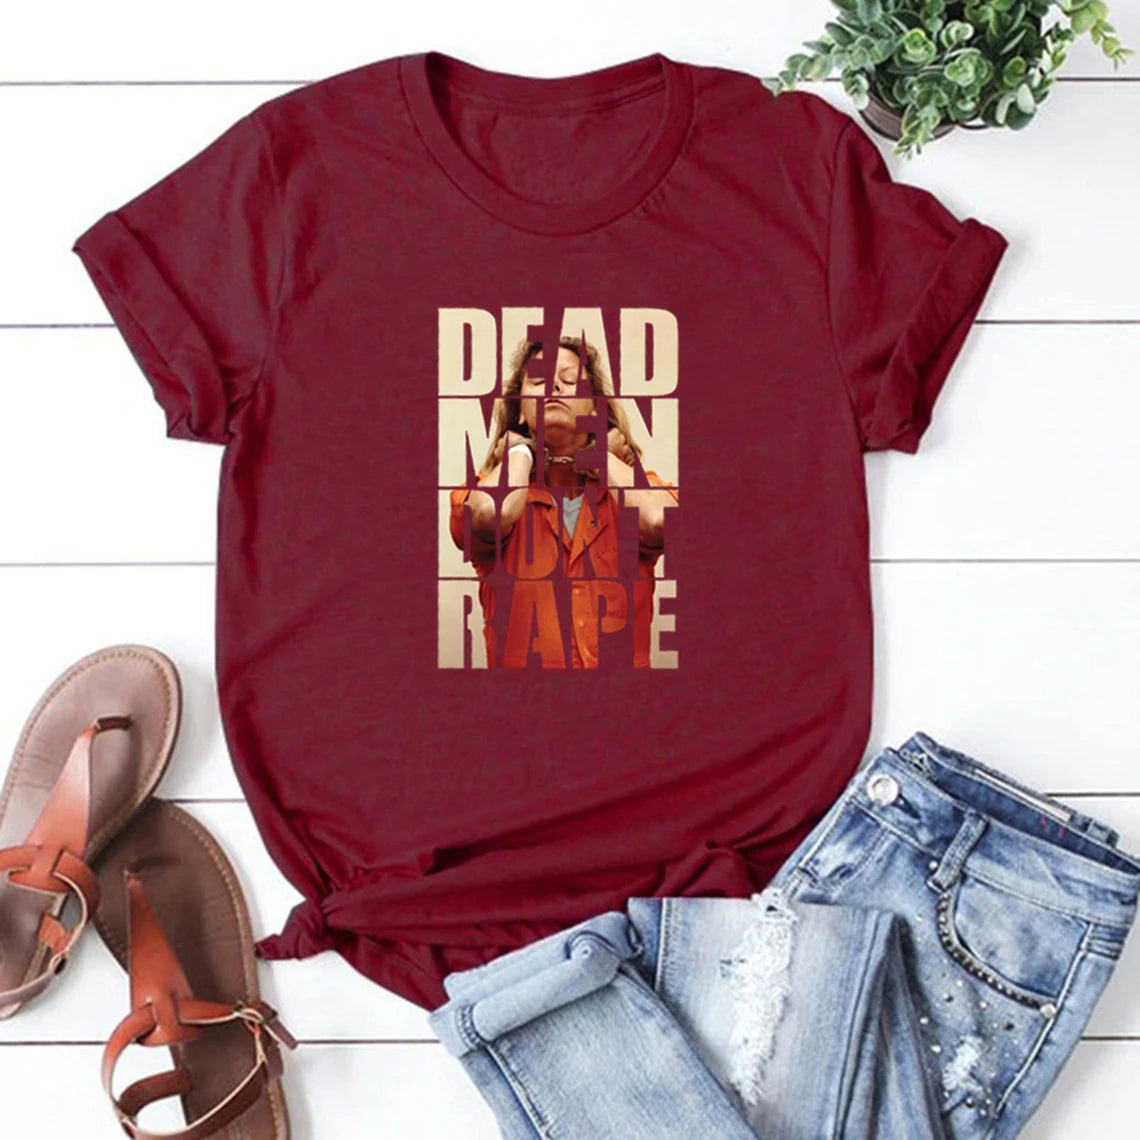 Camiseta-Los hombres muertos no violan a Aileen Wuornos, camiseta de asesino en serie americano, camisetas para mujeres Pro Choice, camisetas de igualdad de derechos